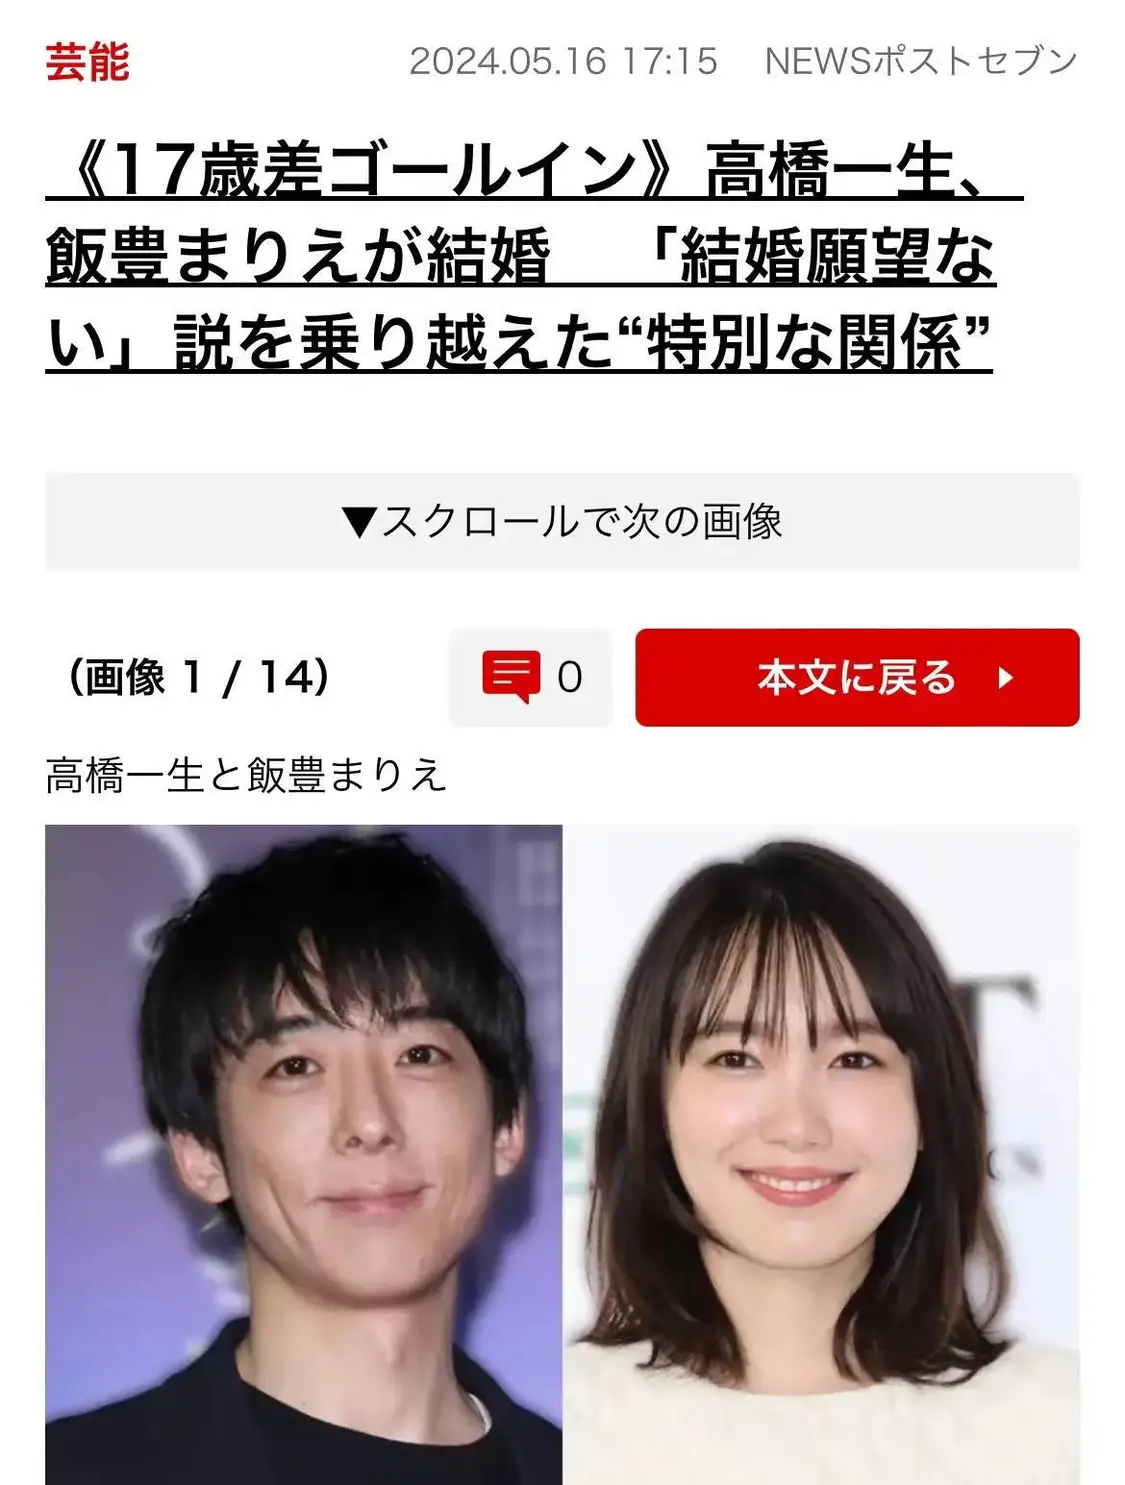 日本演员高桥一生与饭丰万理江宣布结婚 二人相差18岁